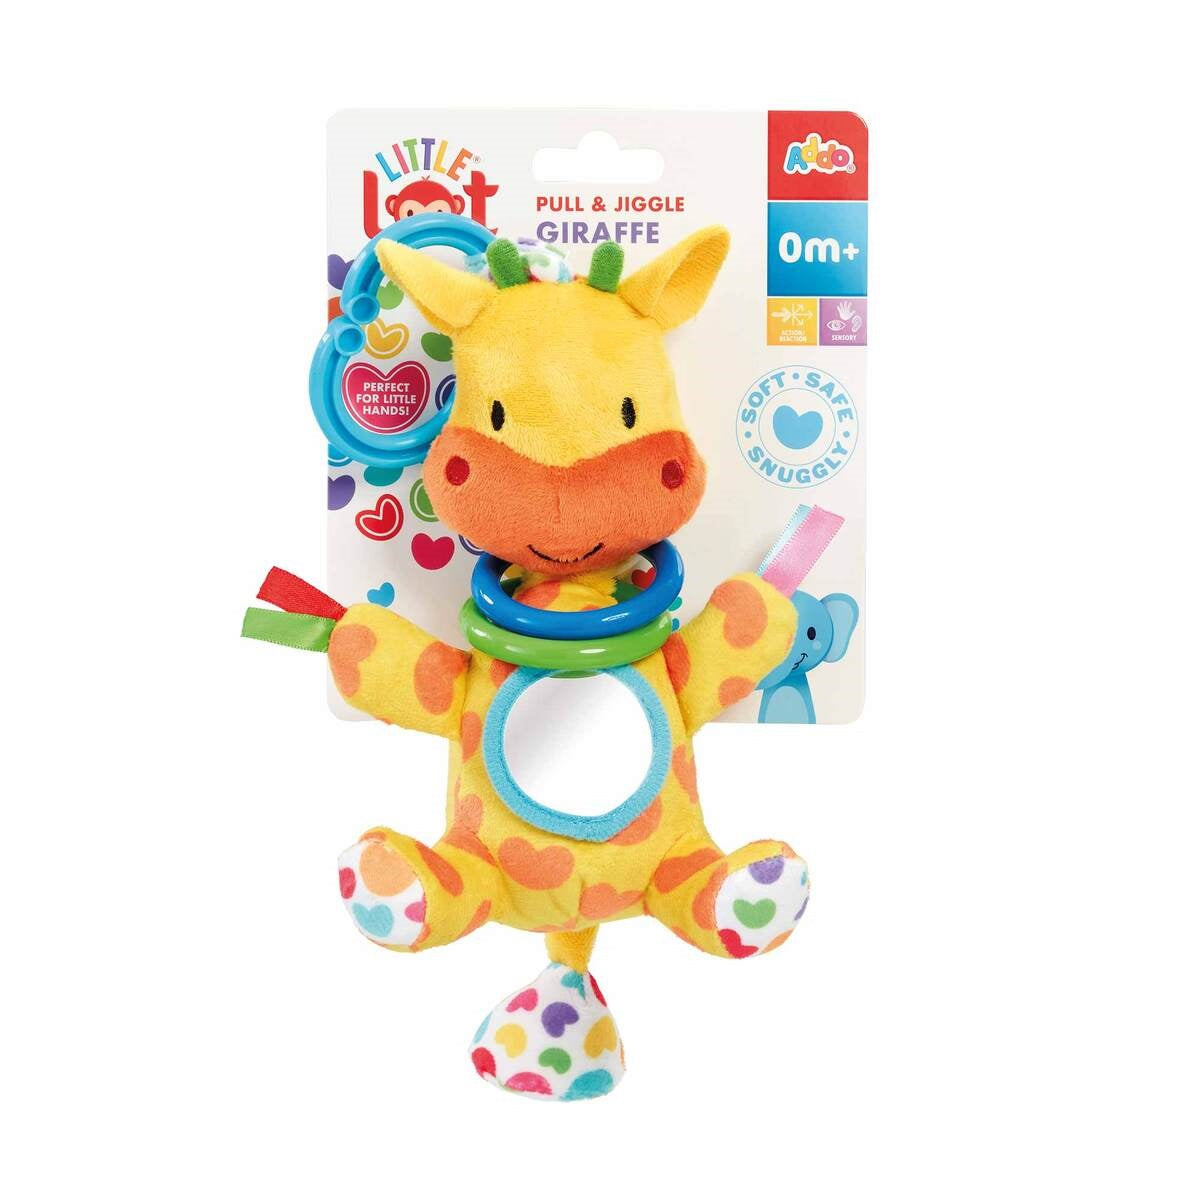 Little Lot Pull & Jiggle Giraffe Pram Toy